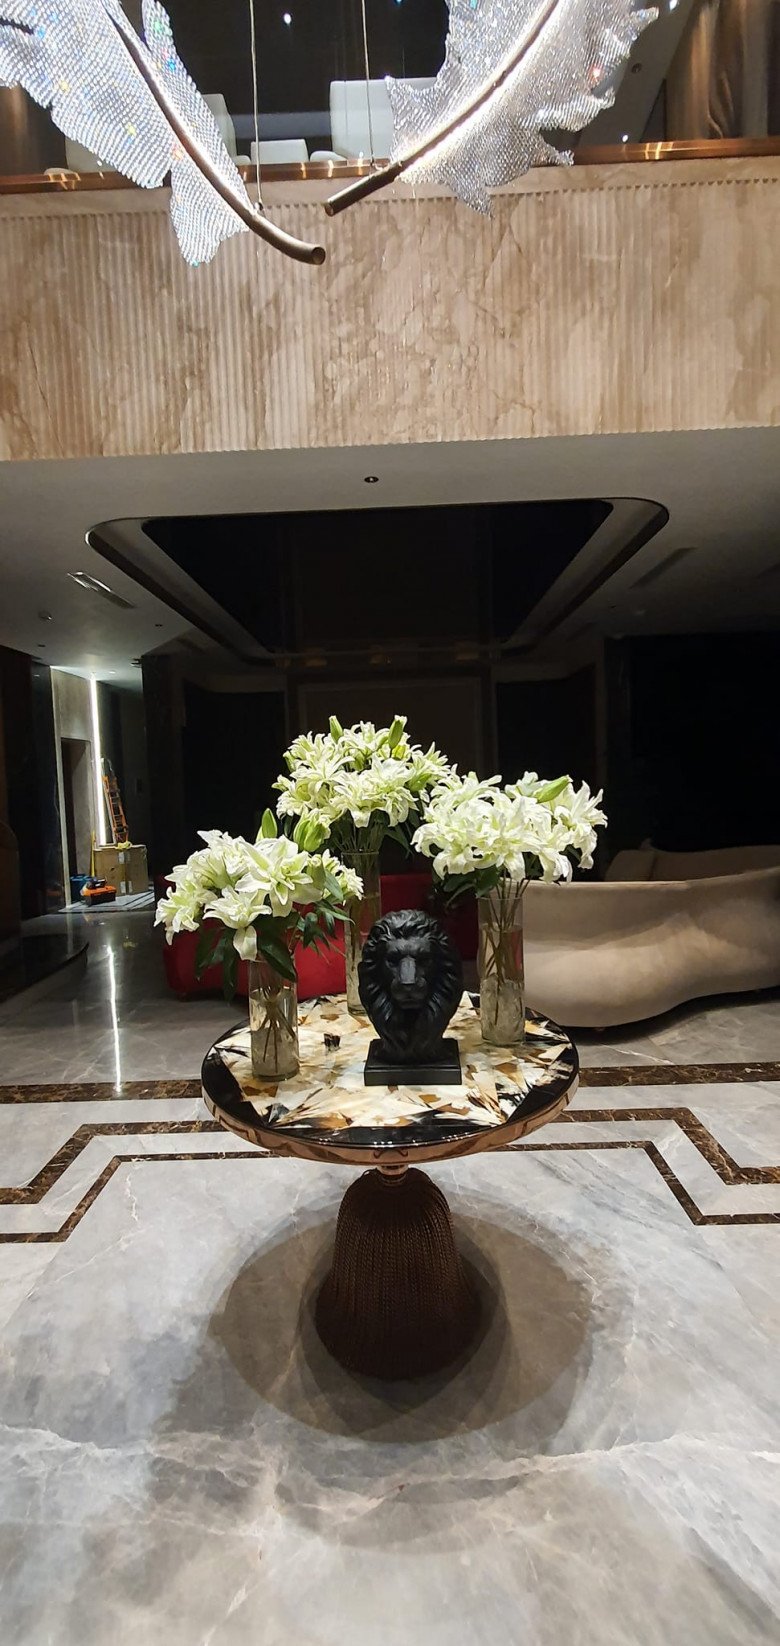 Trong không gian biệt thự sang trọng của nhạc sĩ Hoài Phương - Việt Hương, chiếc bình hoa lớn đầy tươi tắn được đặt ở chiếc bàn tròn trung tâm phòng khách gây ấn tượng mạnh với vẻ đẹp tinh tế và sang trọng.